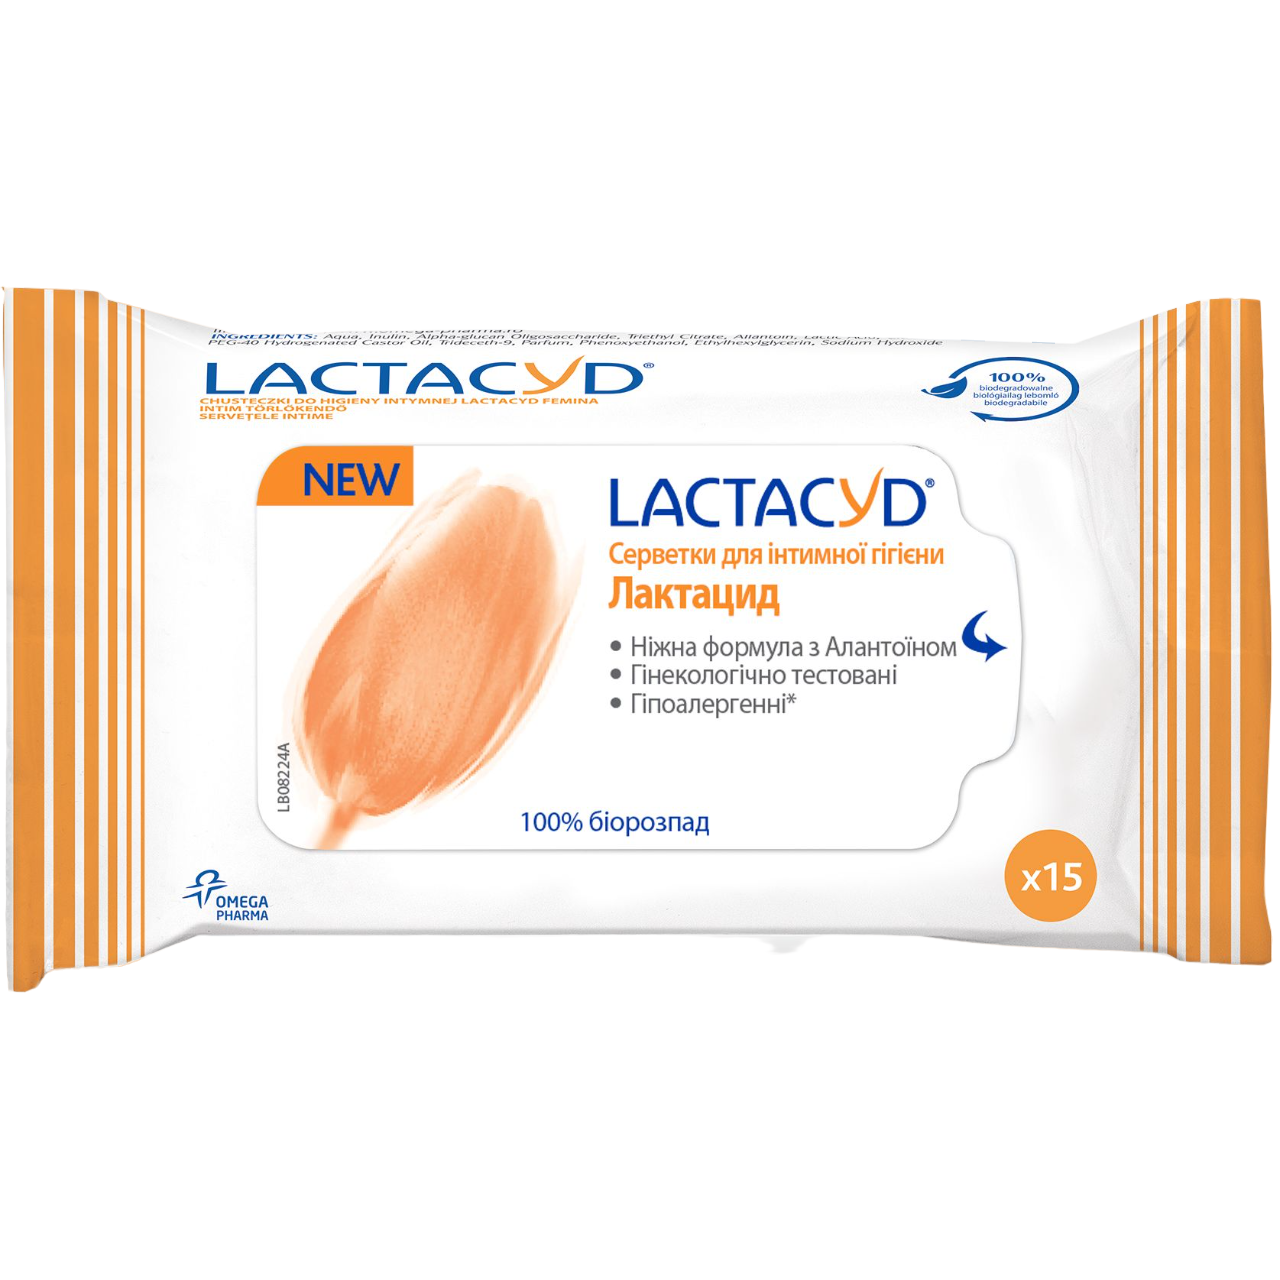 Серветки для інтимної гігієни Lactacyd, 15 шт. - фото 1